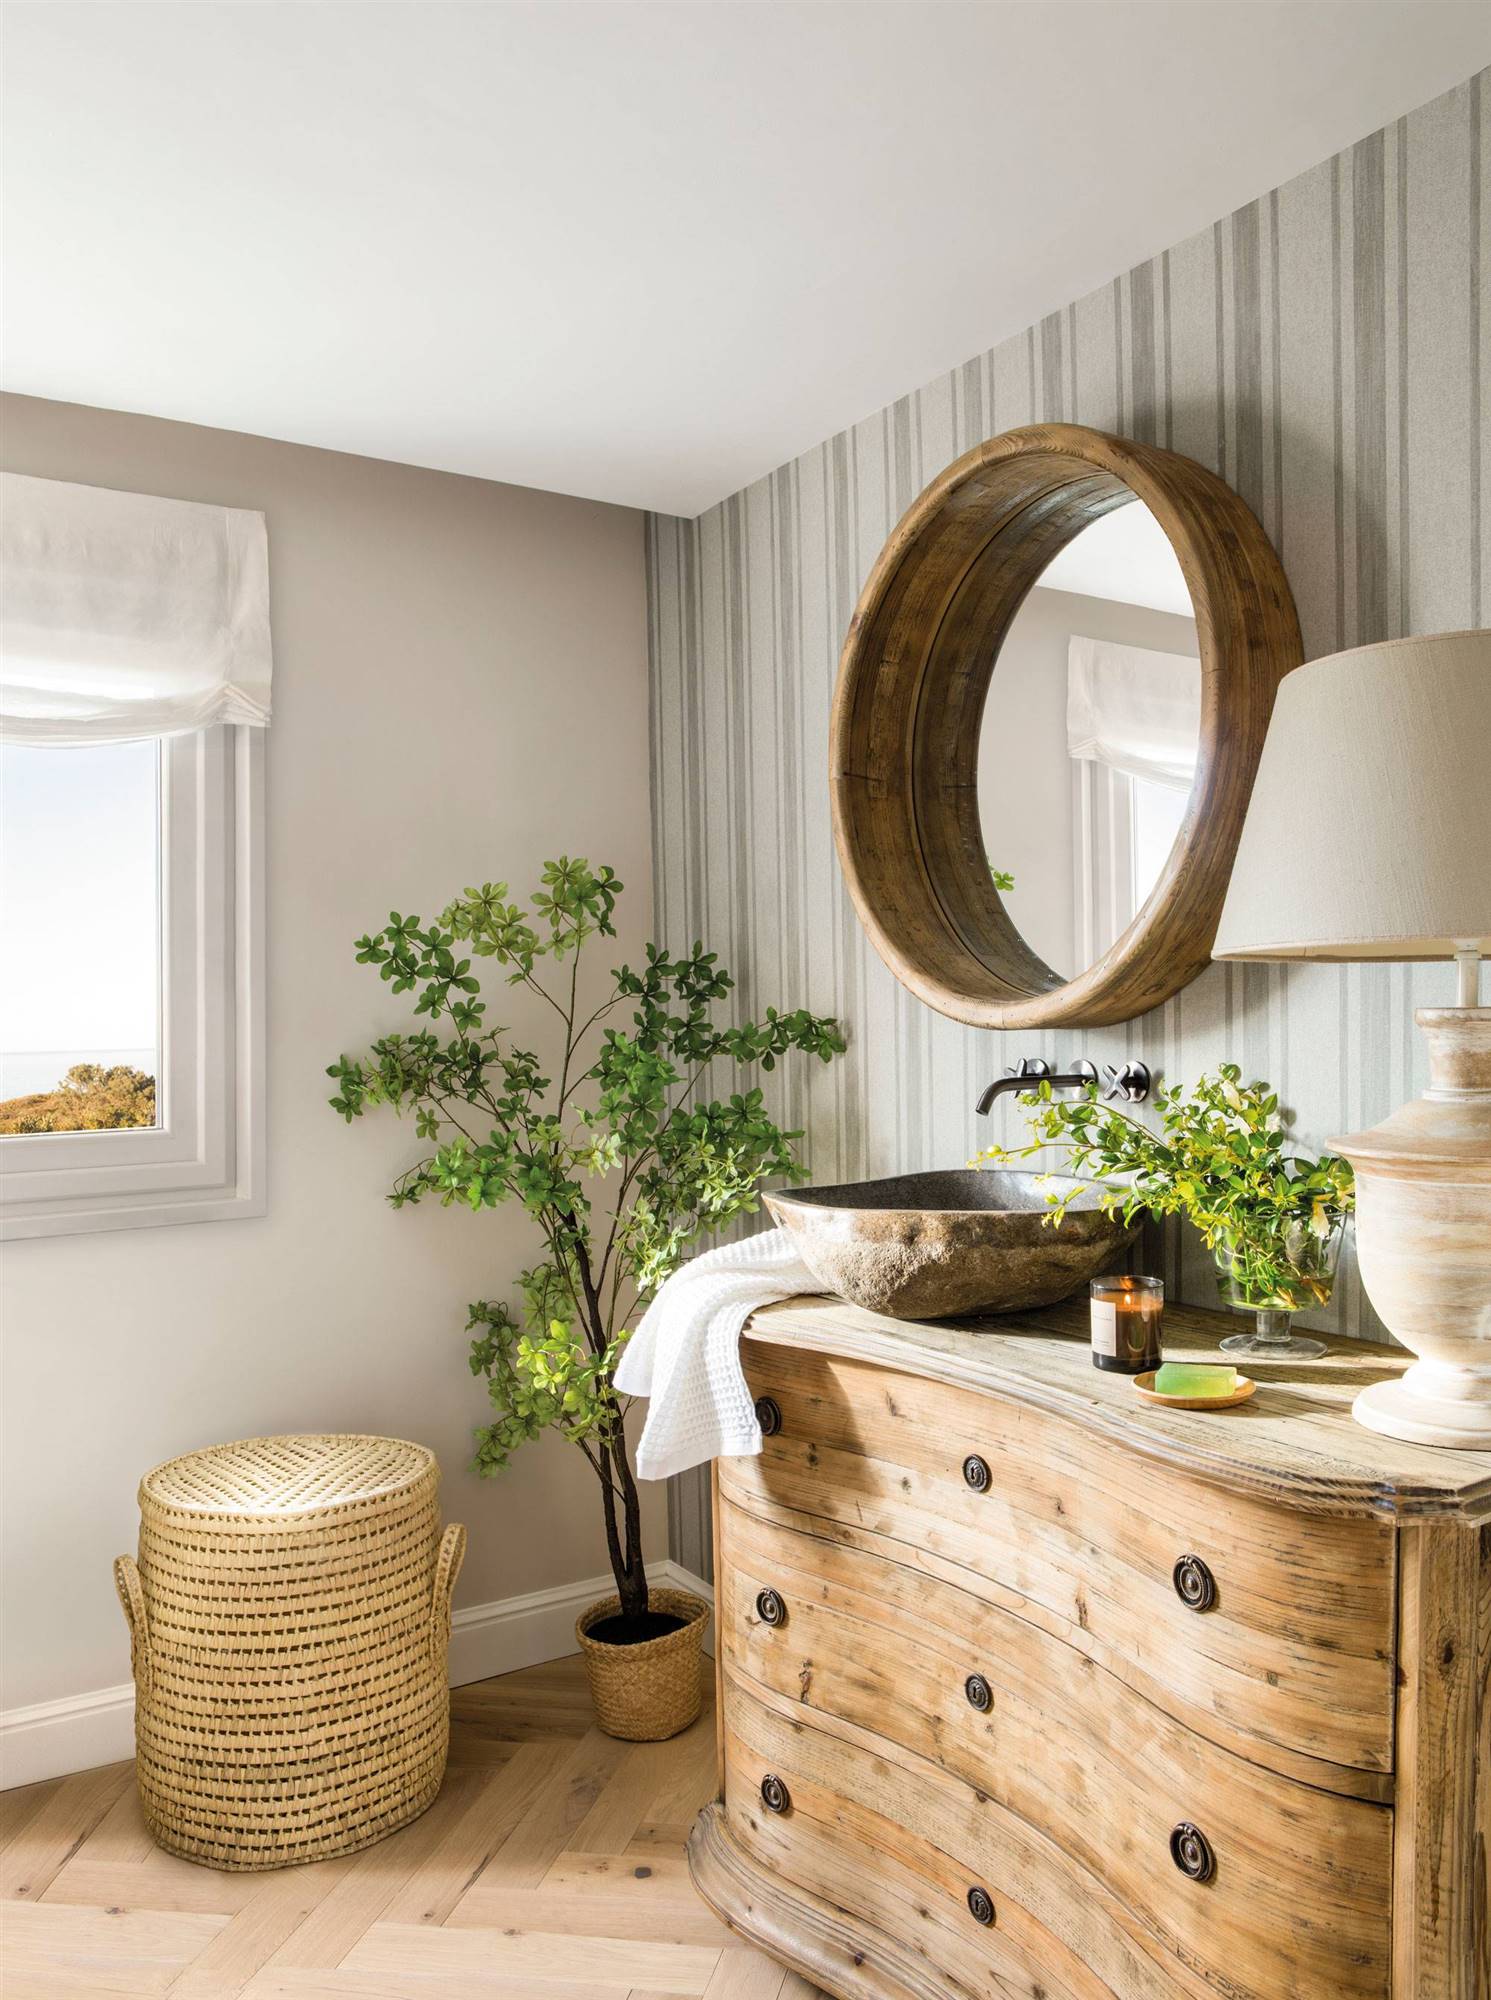 Baño de estilo rústico con cómoda antigua a modo de mueble bajolavabo y espejo redondo con marco de madera. 